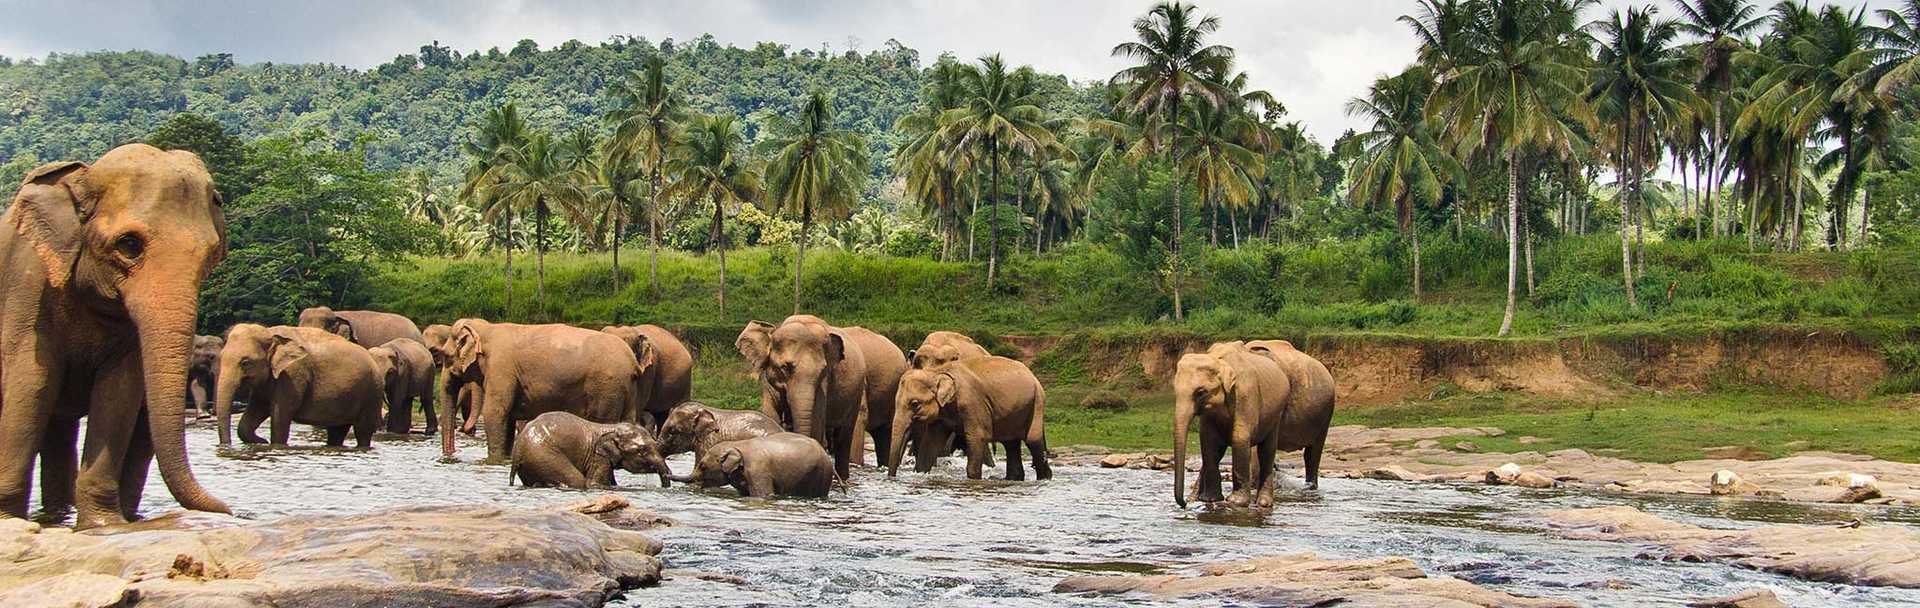 Sri Lanka Tour - Elephant Herd Bathing in Reservoir